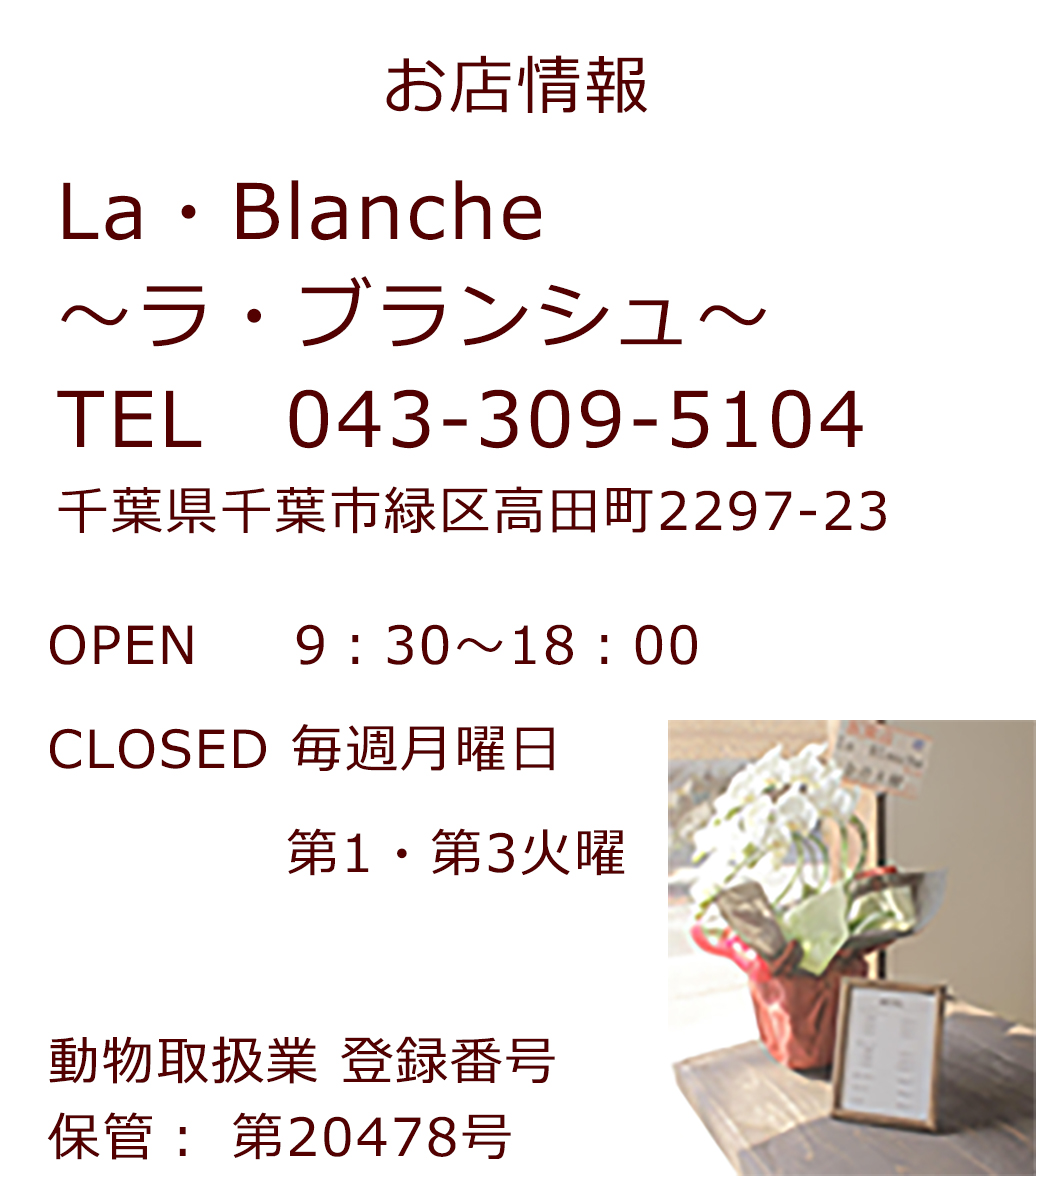 千葉県緑区にあるドッグサロン、ラブランシュのお店情報です